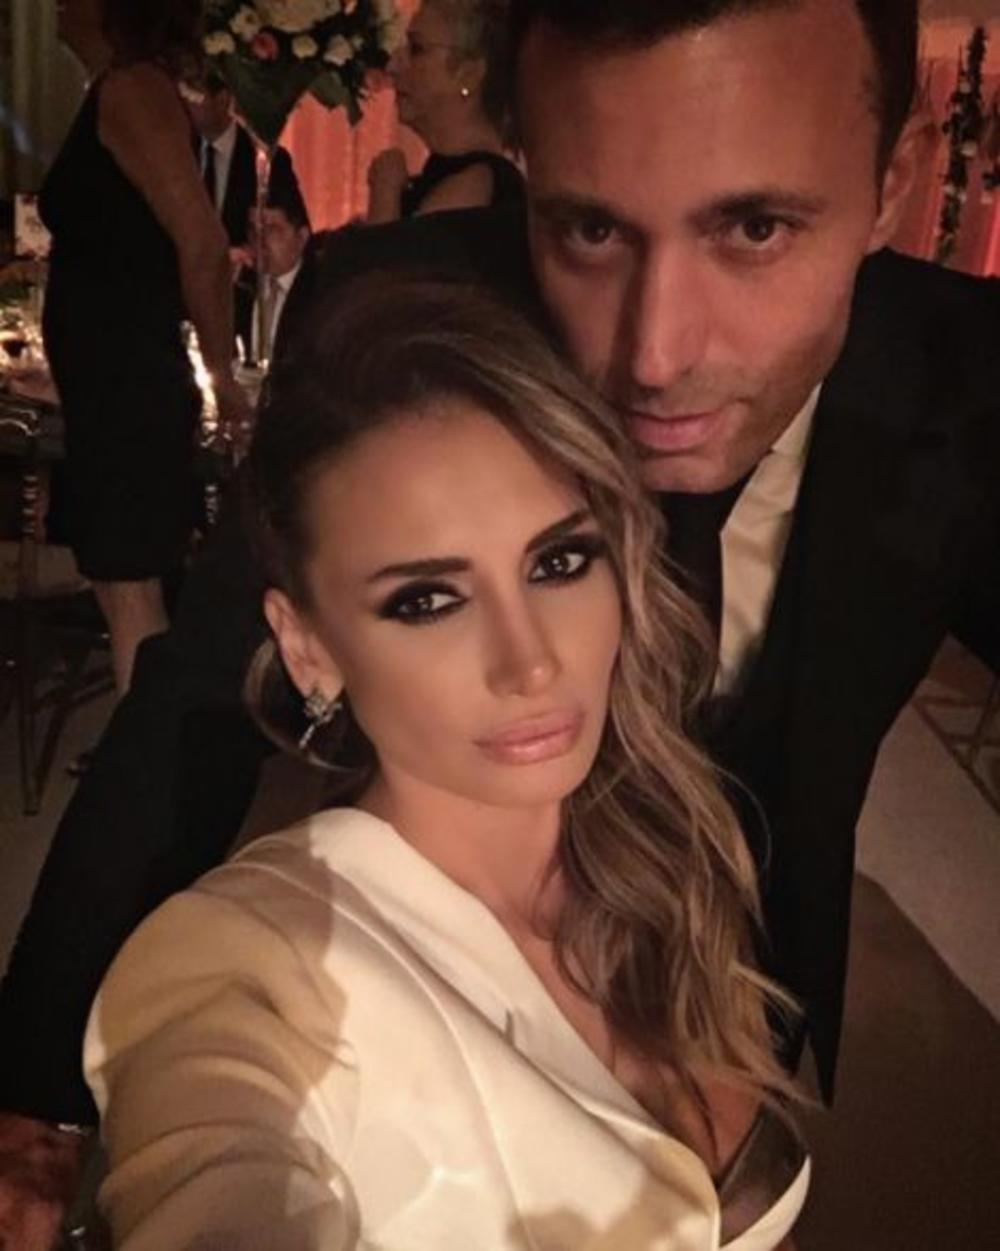 <p>Nedavno su se munjevito proširile glasine da su se turski pevač Mustafa Sandal i naša pevačica Emina Jahović pomirili nakon razvoda, pa je predstavnike medija interesovalo kako oni trenutno funkcionišu</p>